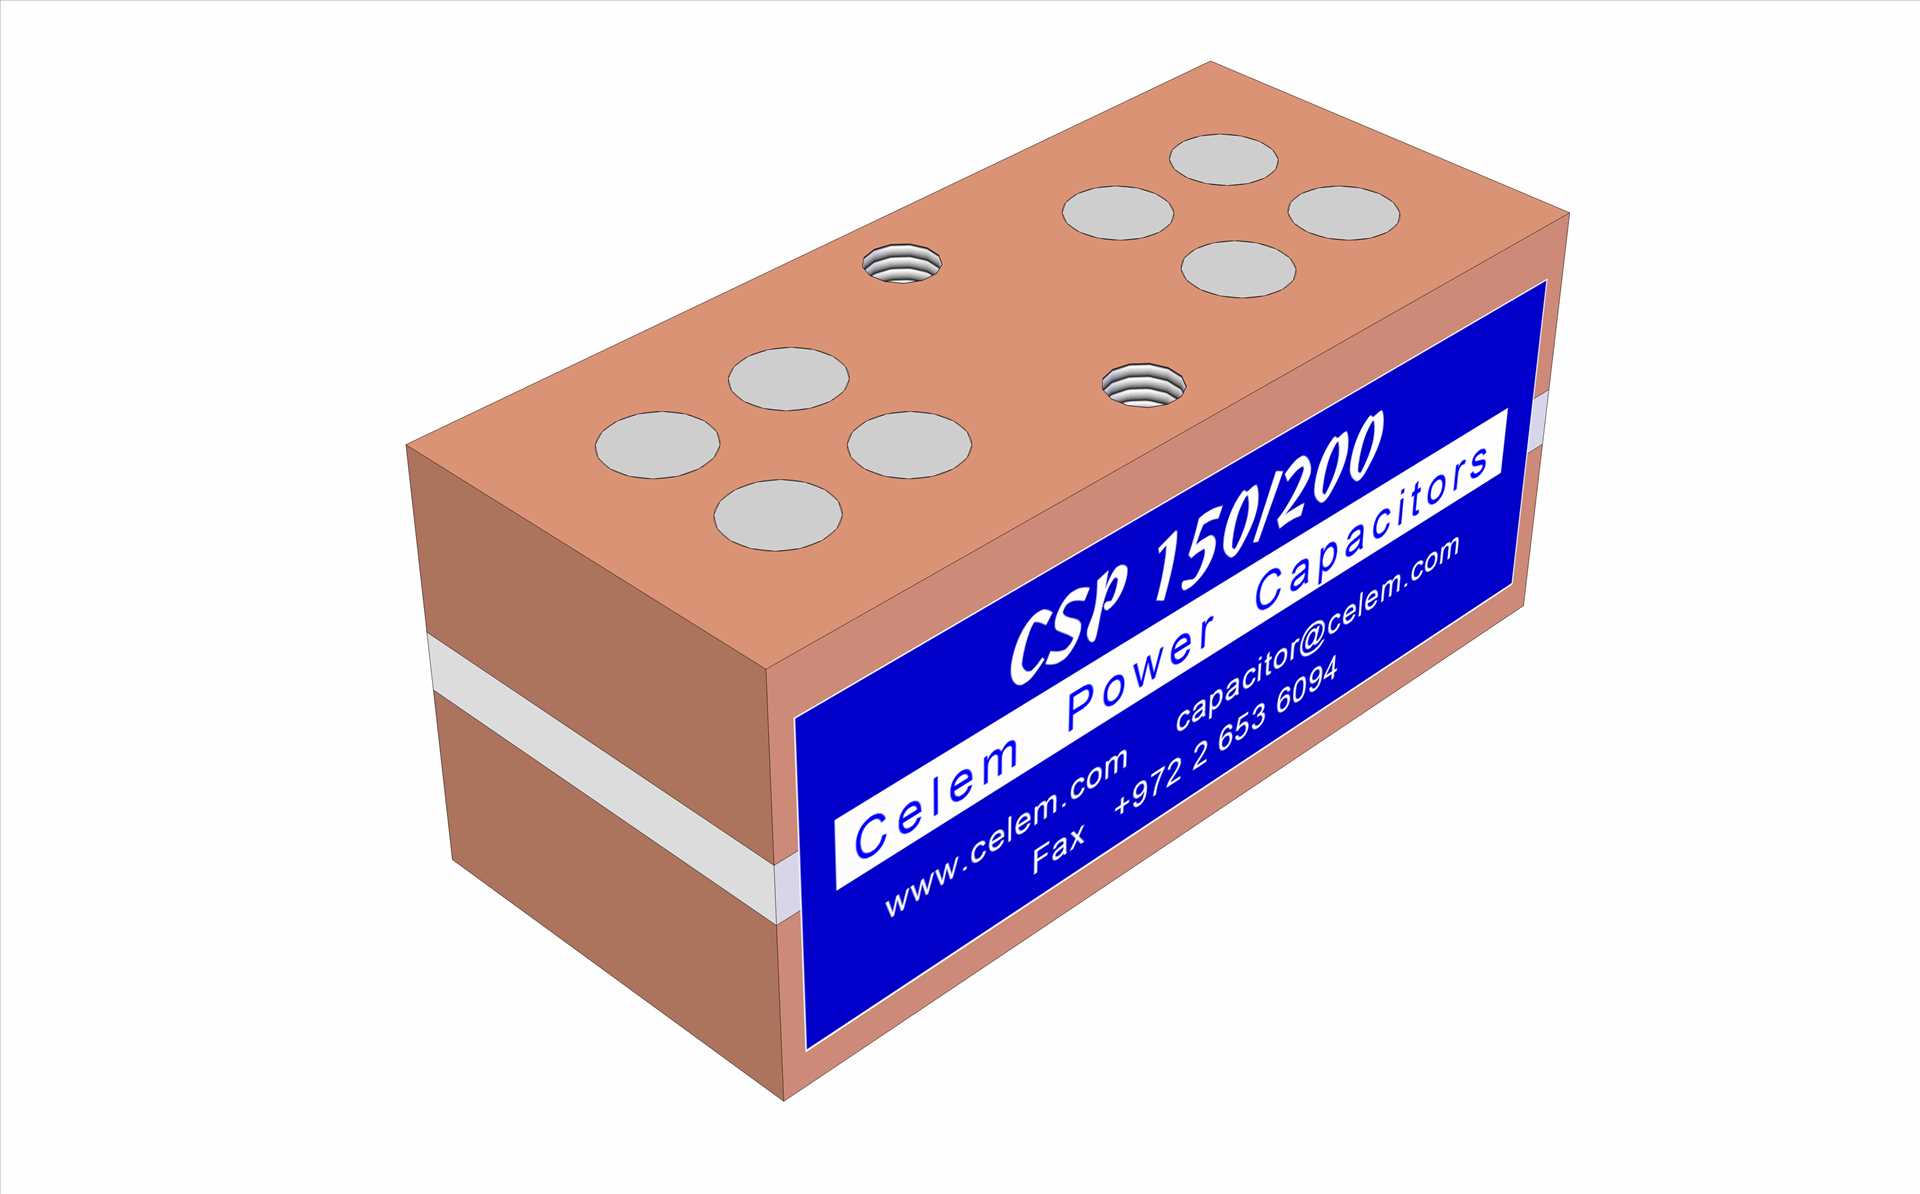 CSP 150/200